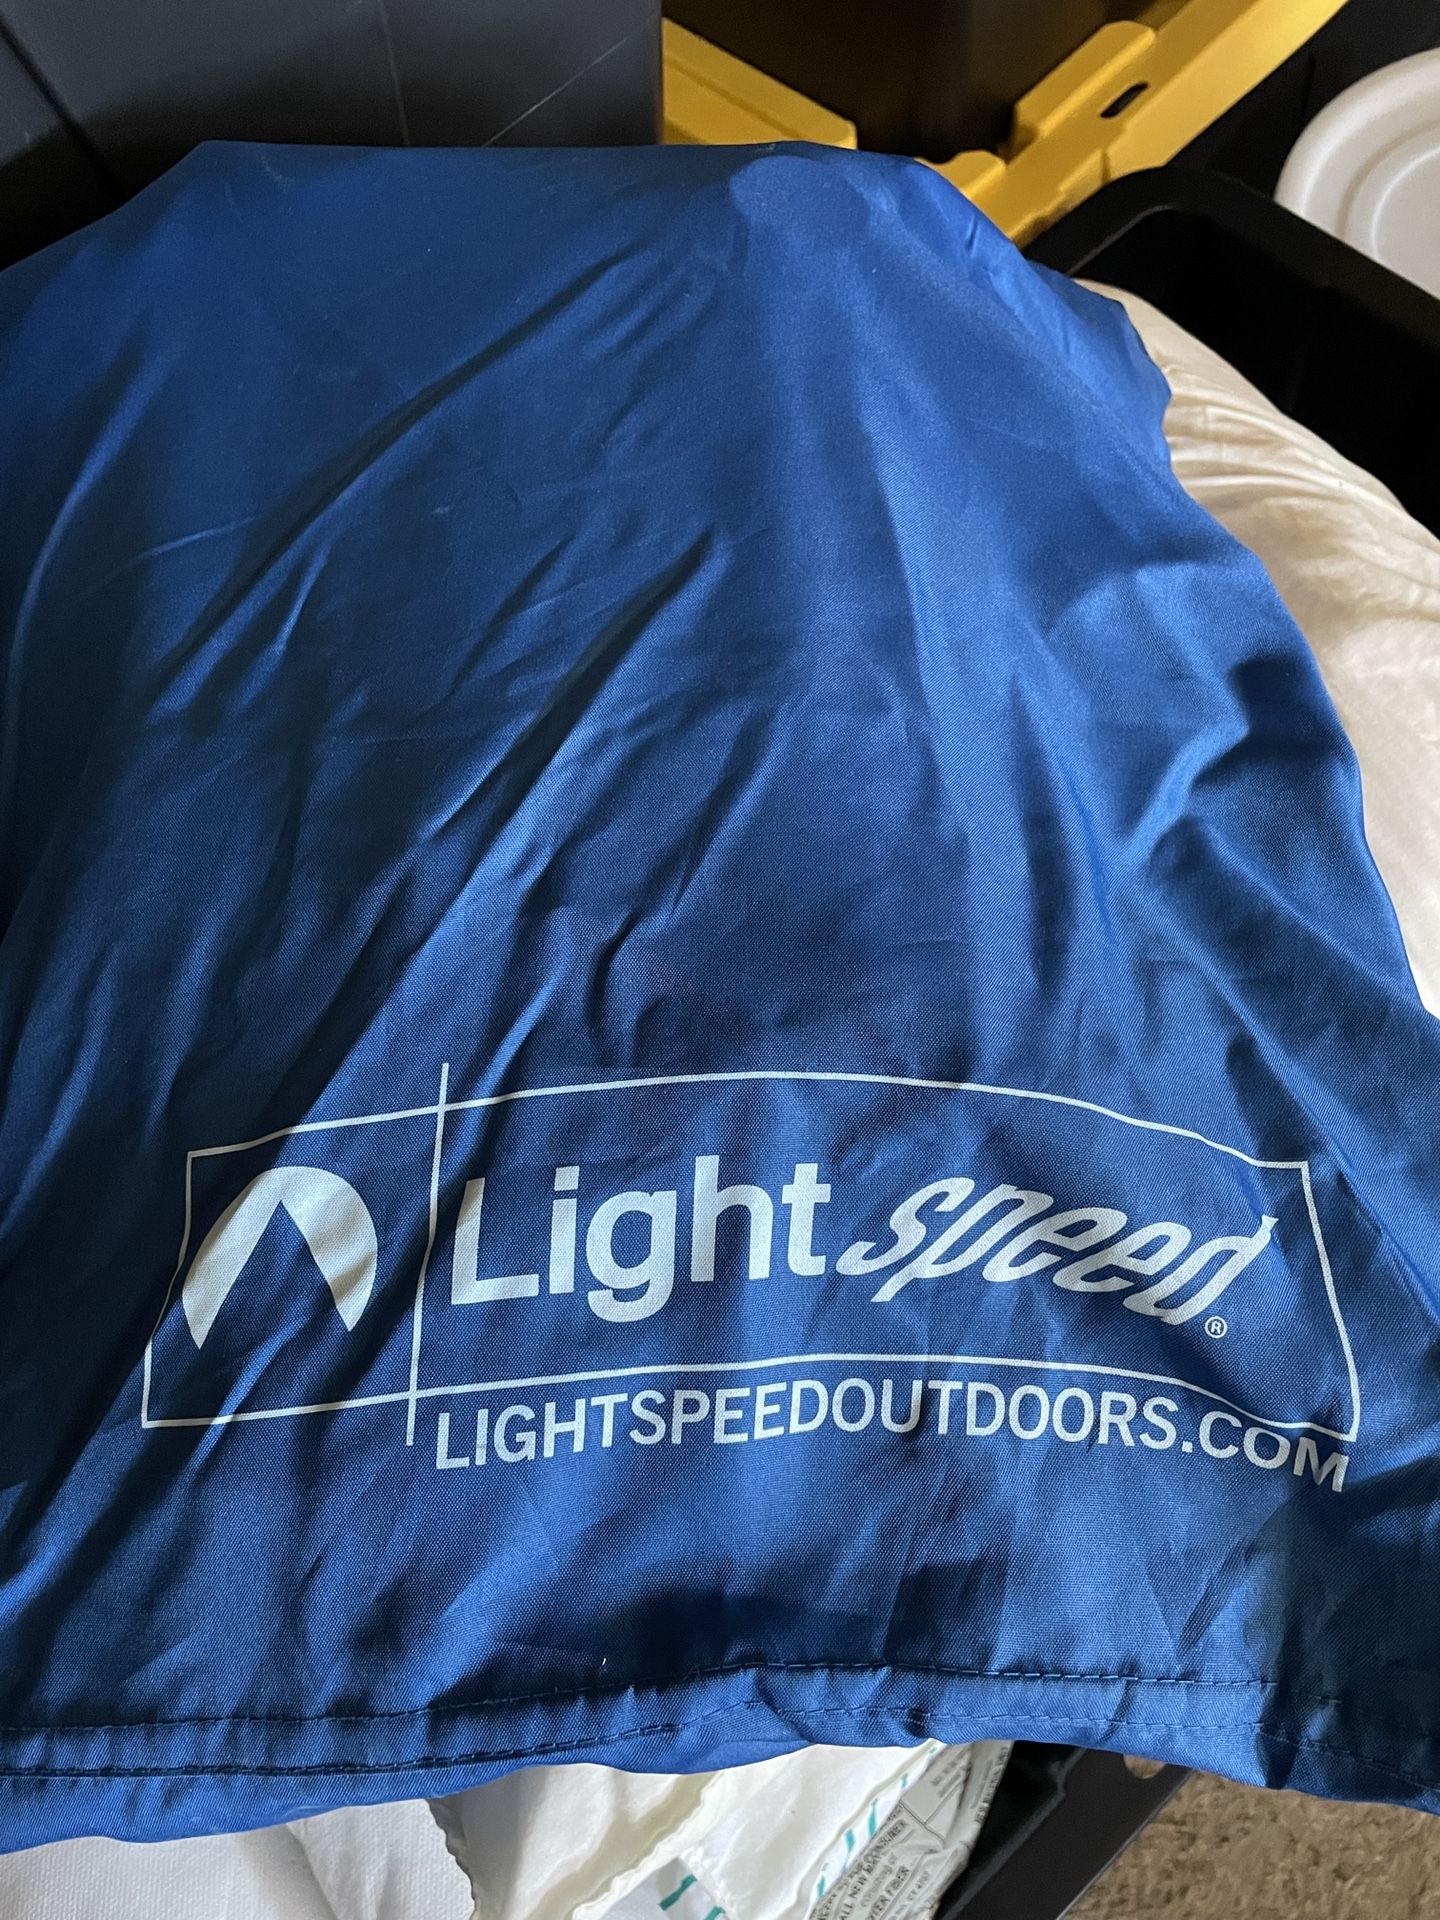 Light speed Queen Air Mattress X 2 - Camping Gear